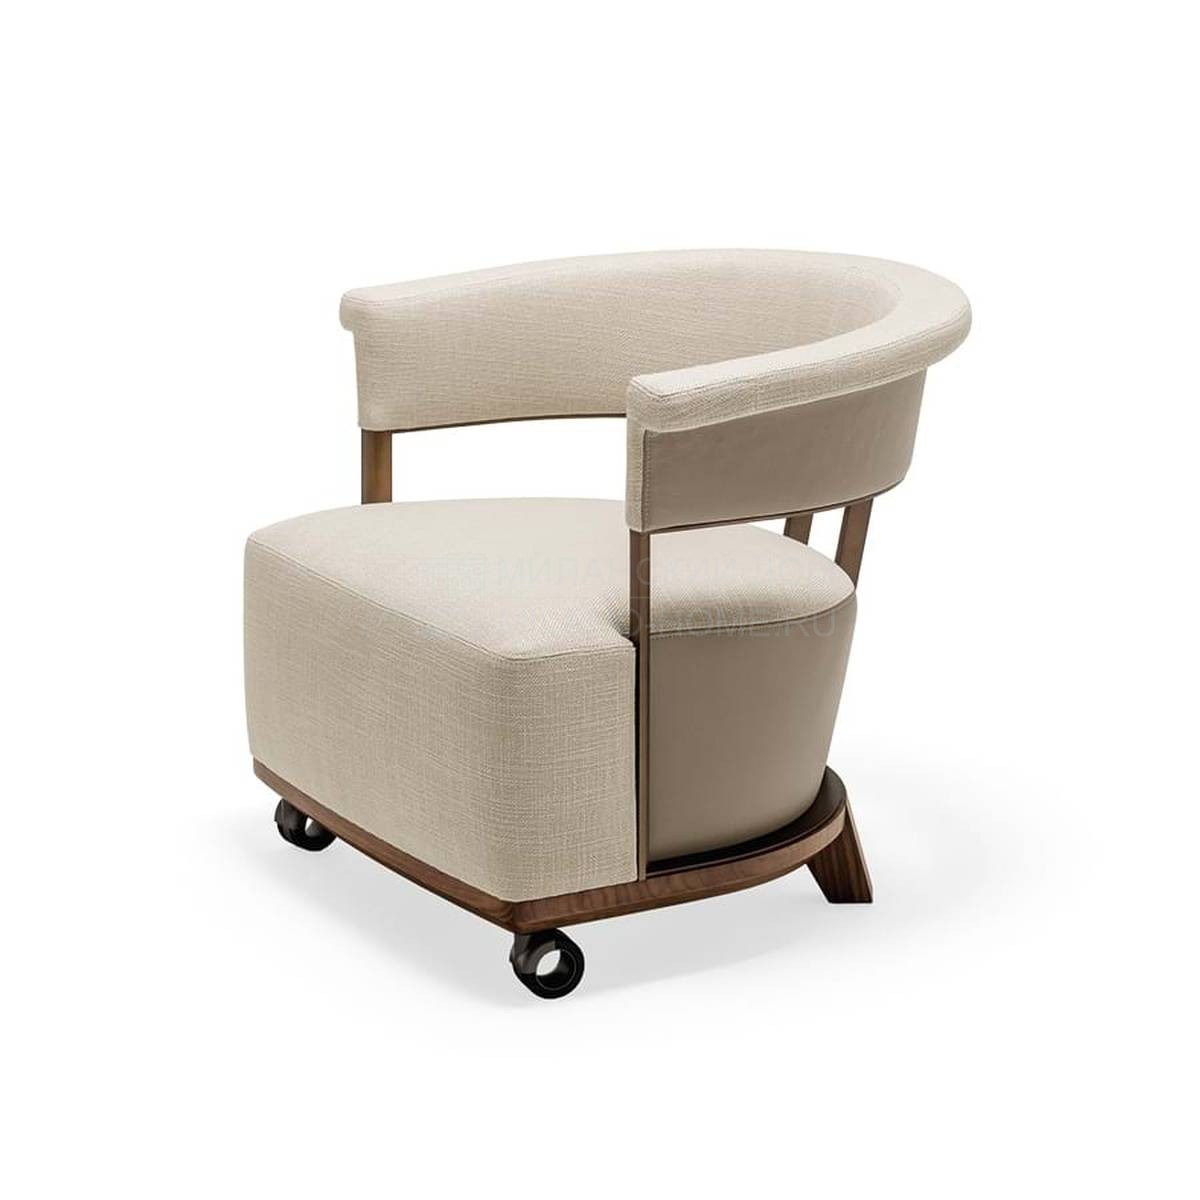 Круглое кресло Lady 63830-31 из Италии фабрики GIORGETTI